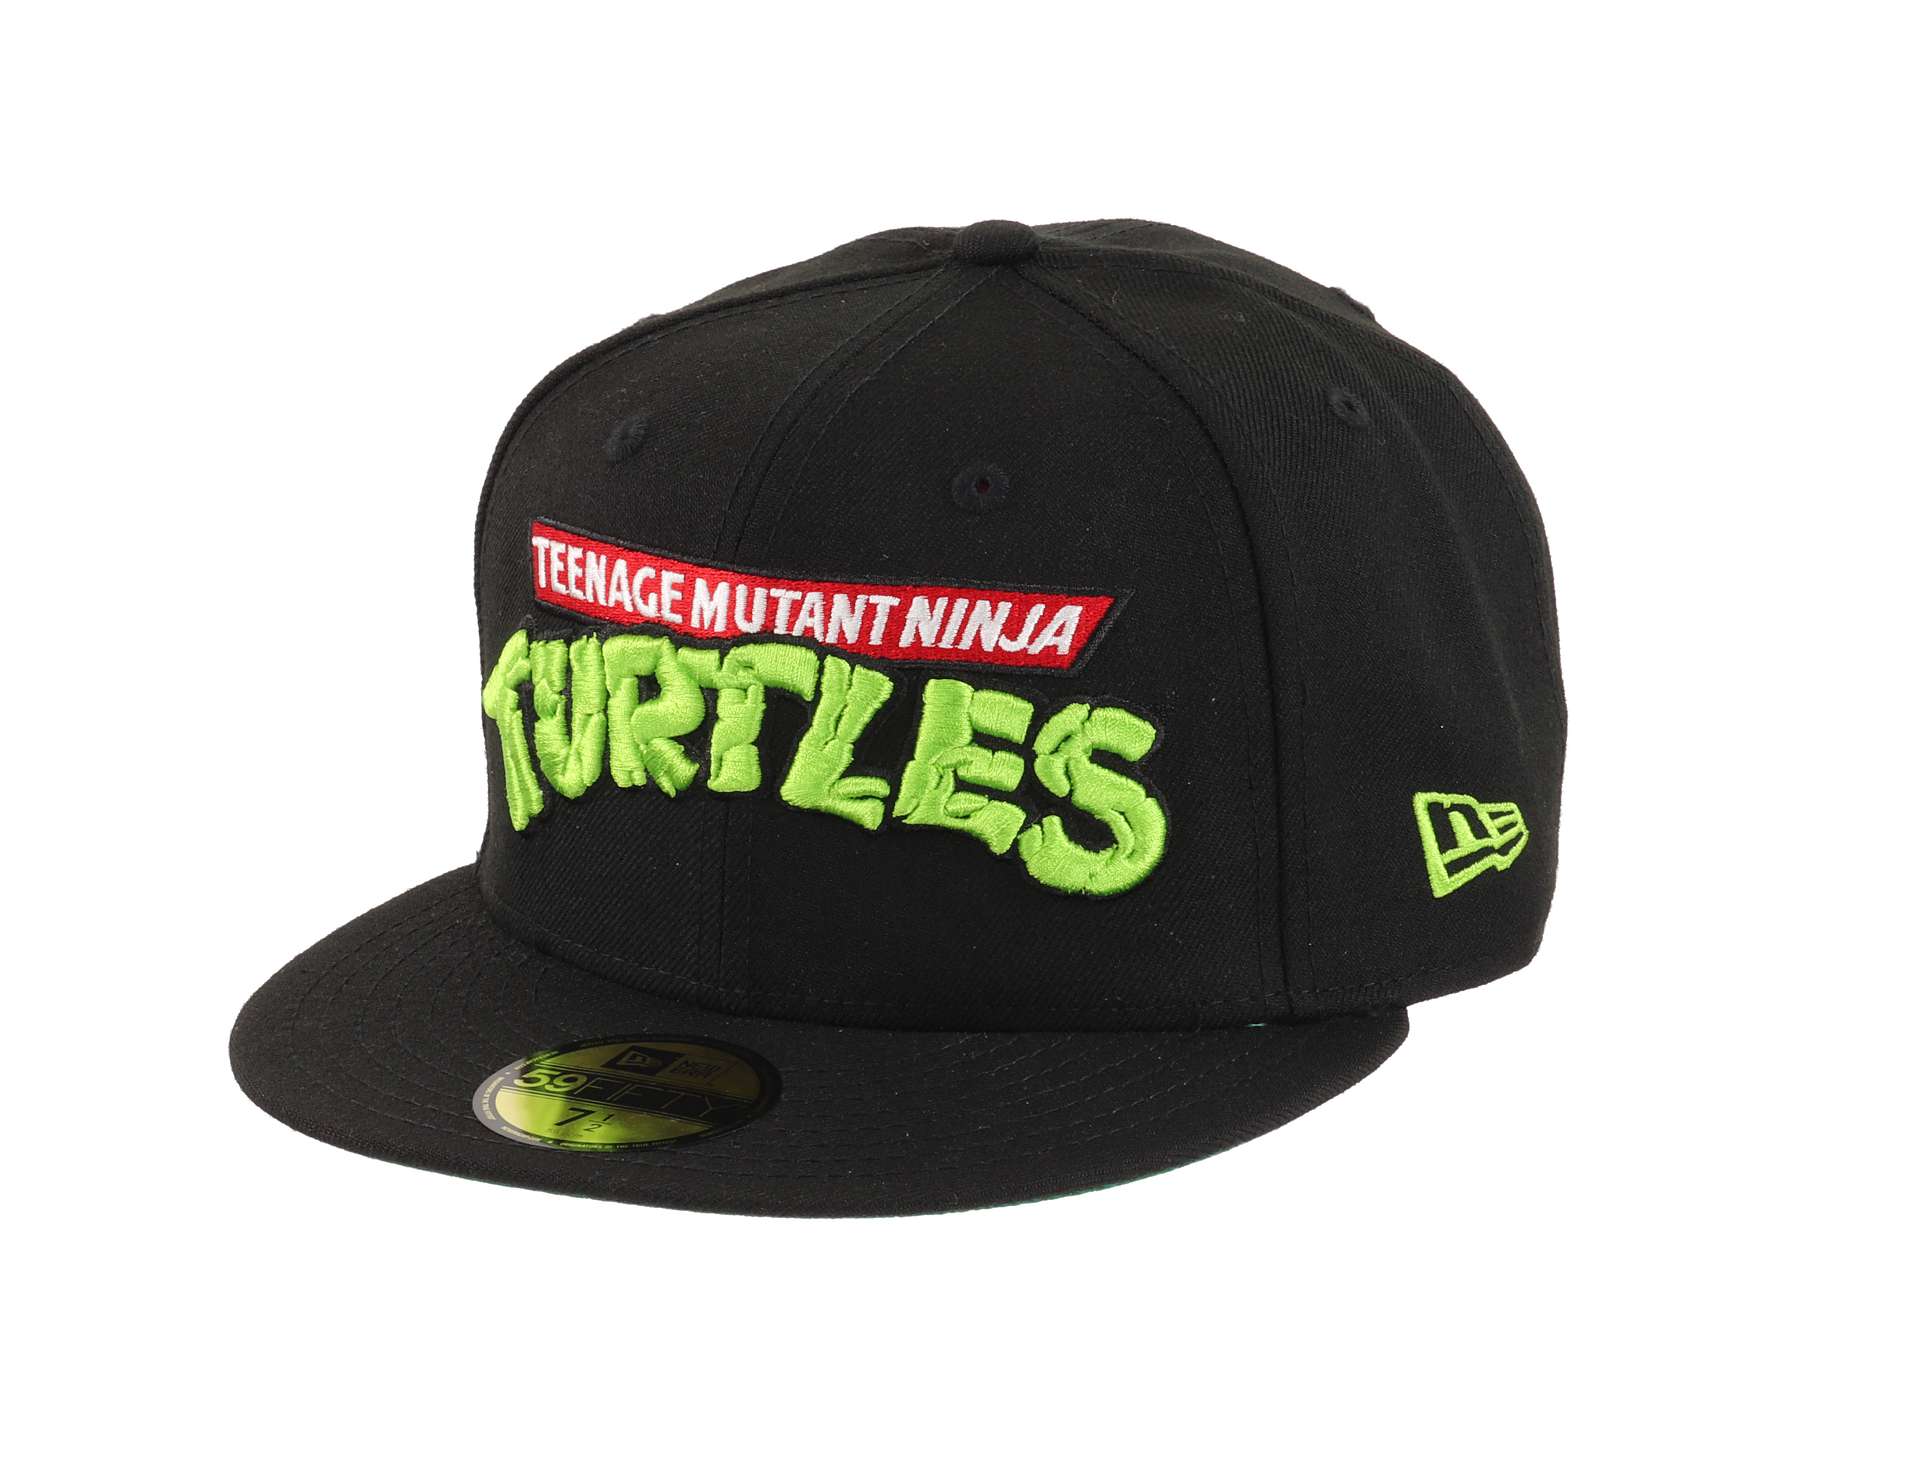 Teenage Mutant Ninja Turtles TMNT Edition Black 59Fifty Basecap New Era